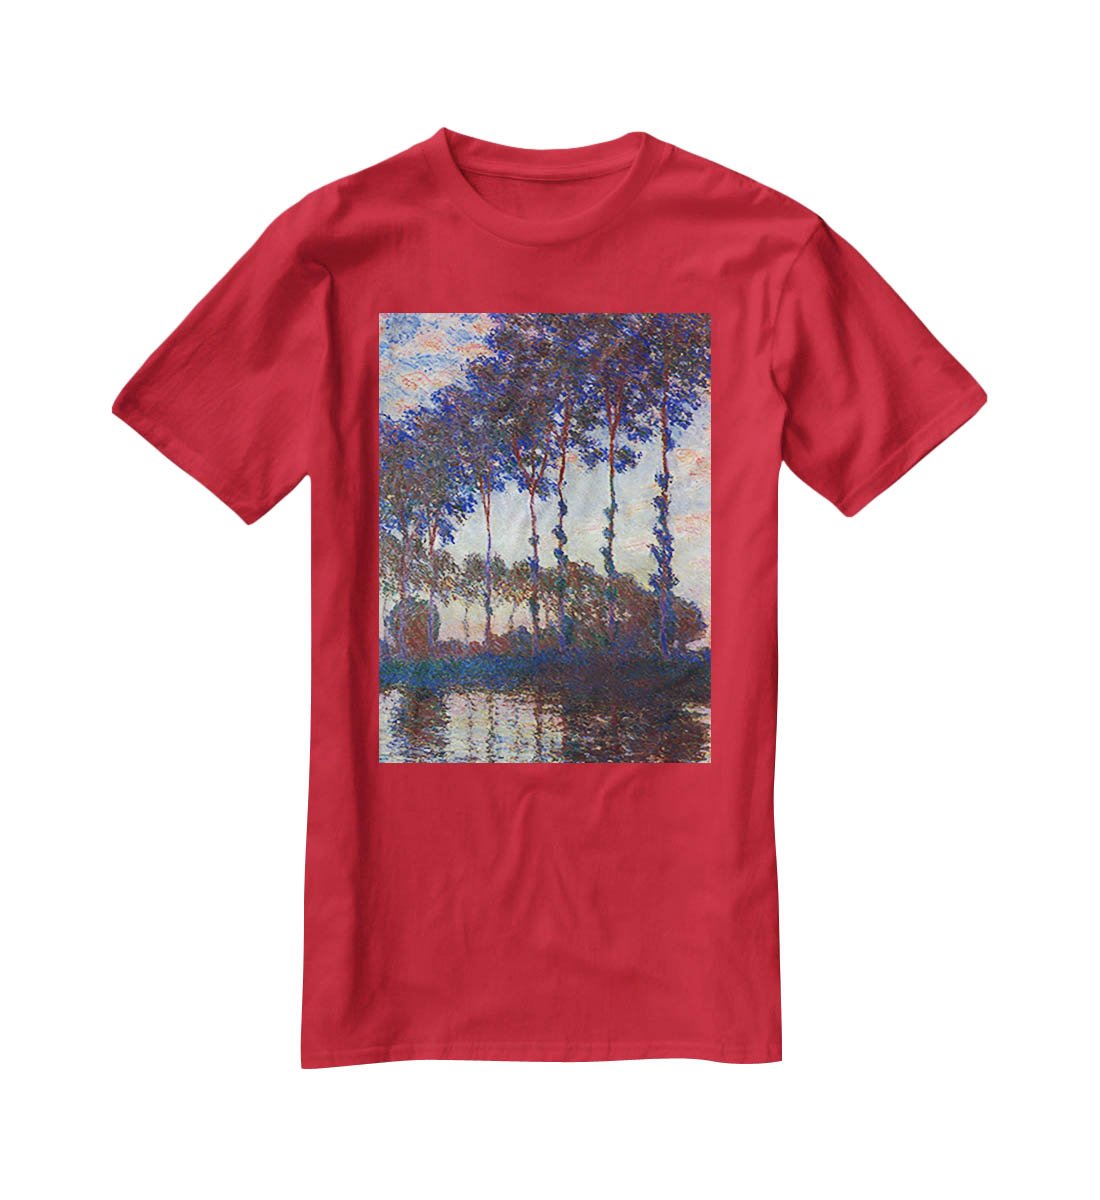 Poplars sunset by Monet T-Shirt - Canvas Art Rocks - 4